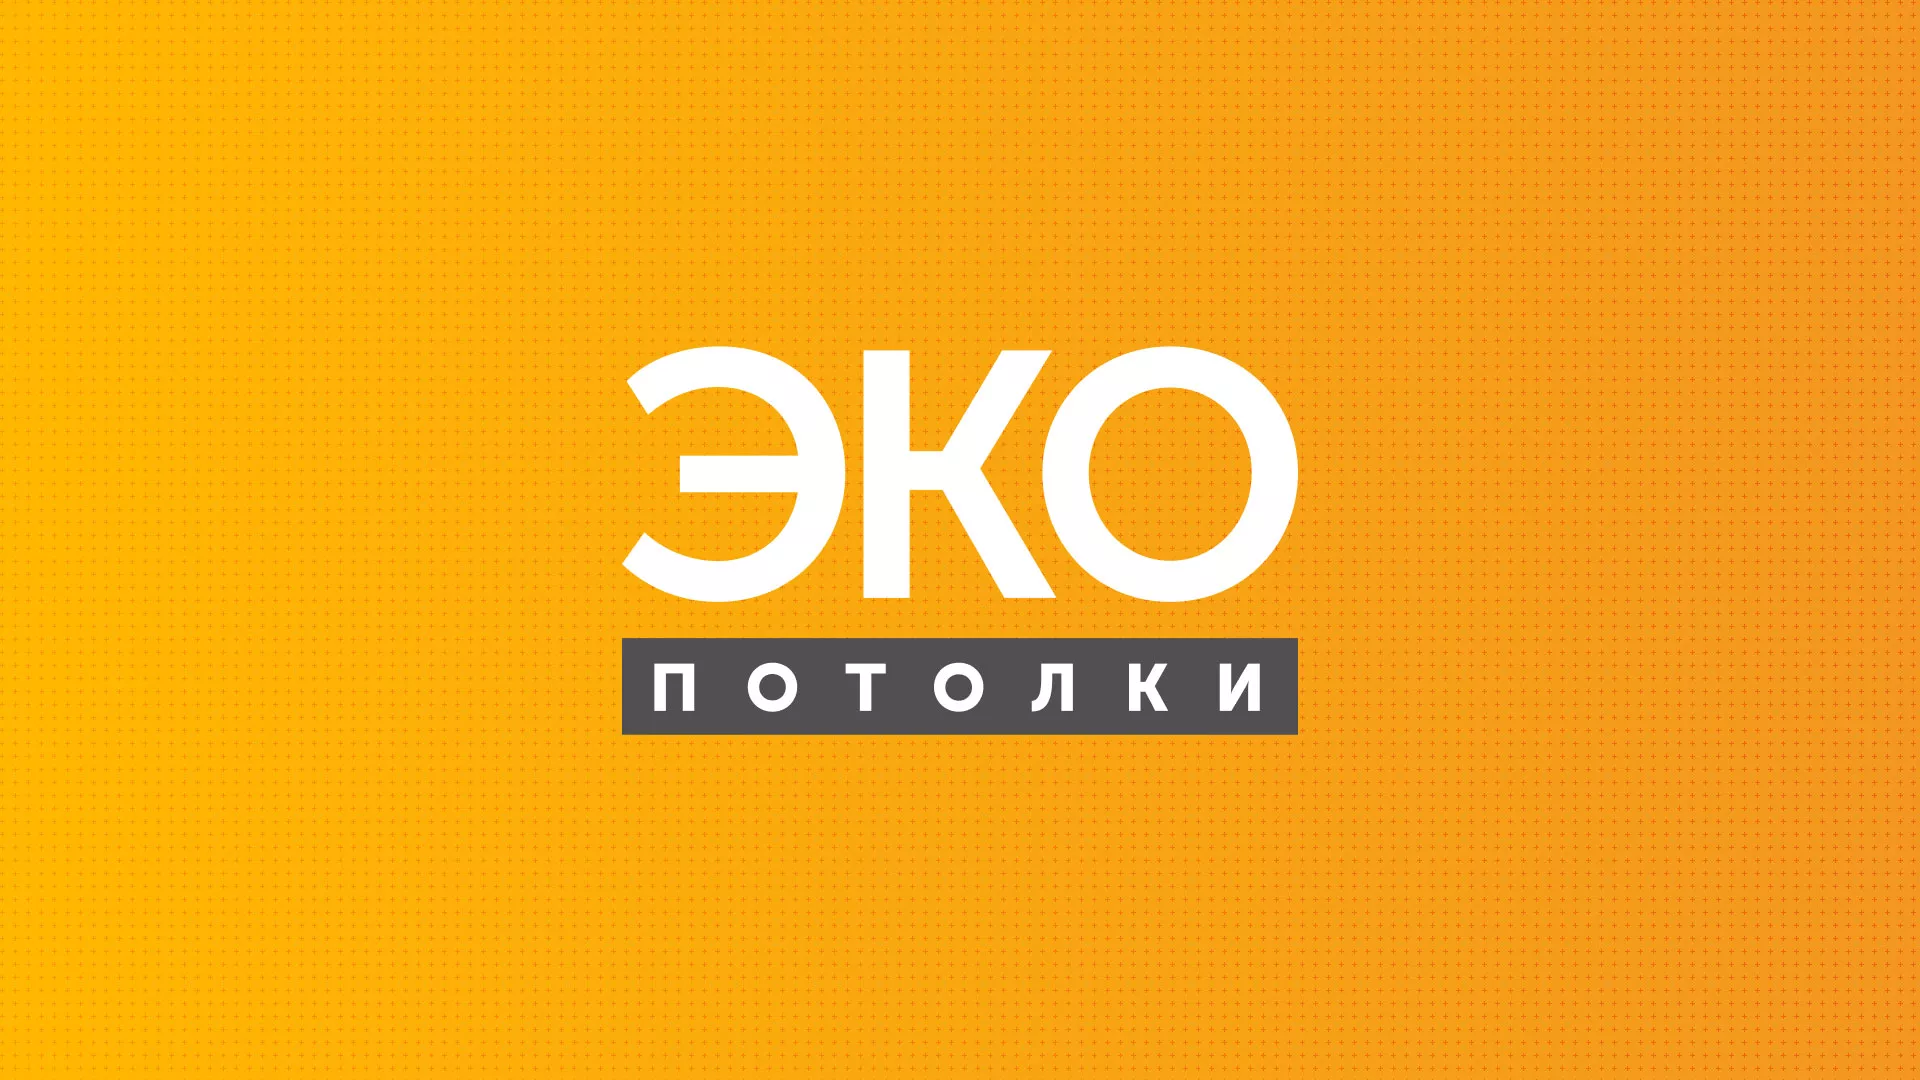 Разработка сайта по натяжным потолкам «Эко Потолки» в Выксе